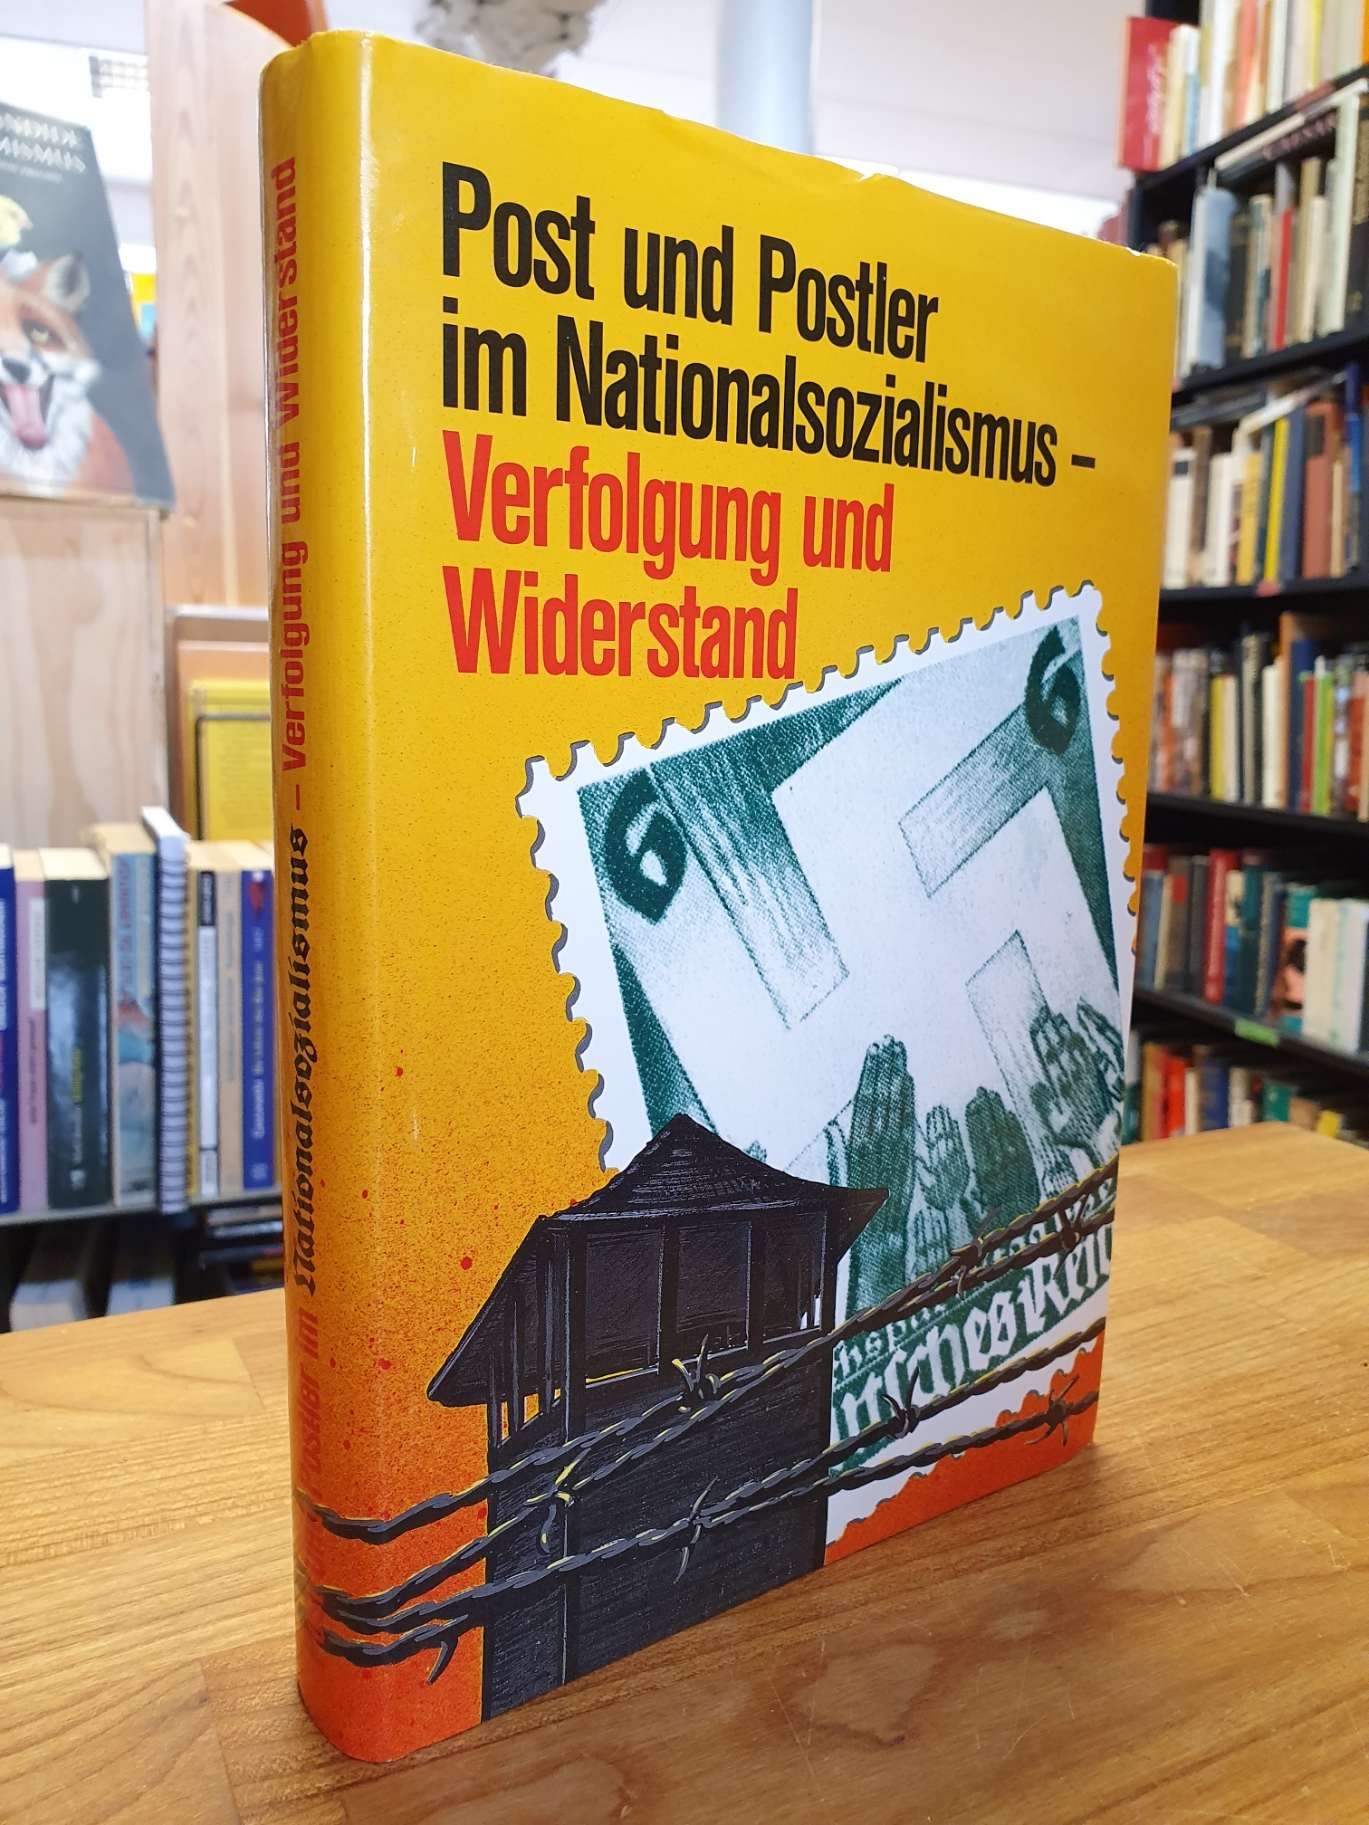 Post und Postler im Nationalsozialismus – Verfolgung u. Widerstand,